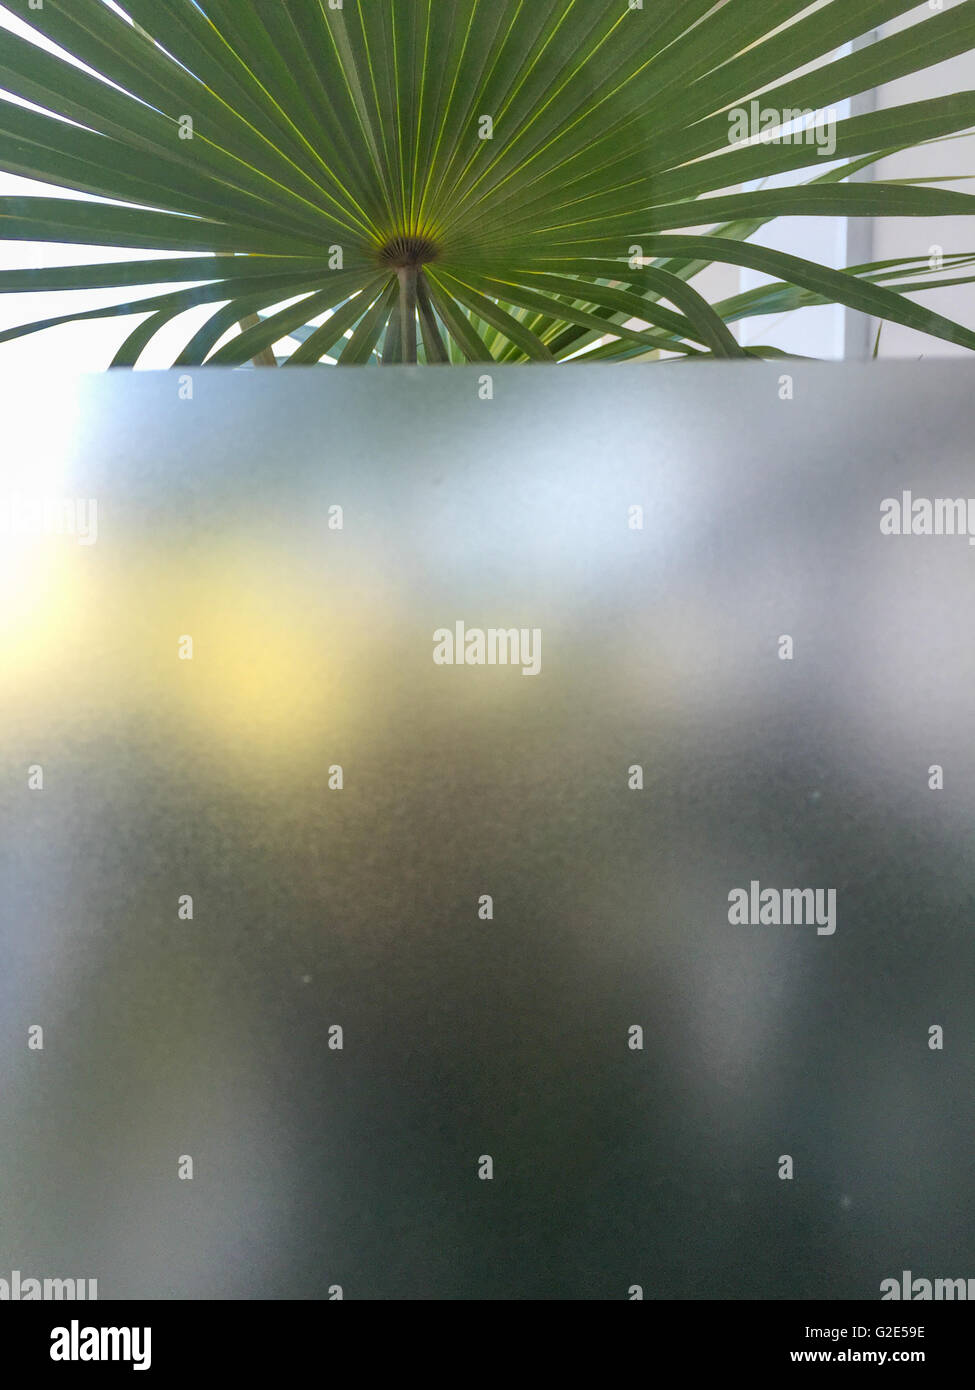 Fenêtre avec à la fois une zone claire et opaque et une plante au-delà Banque D'Images